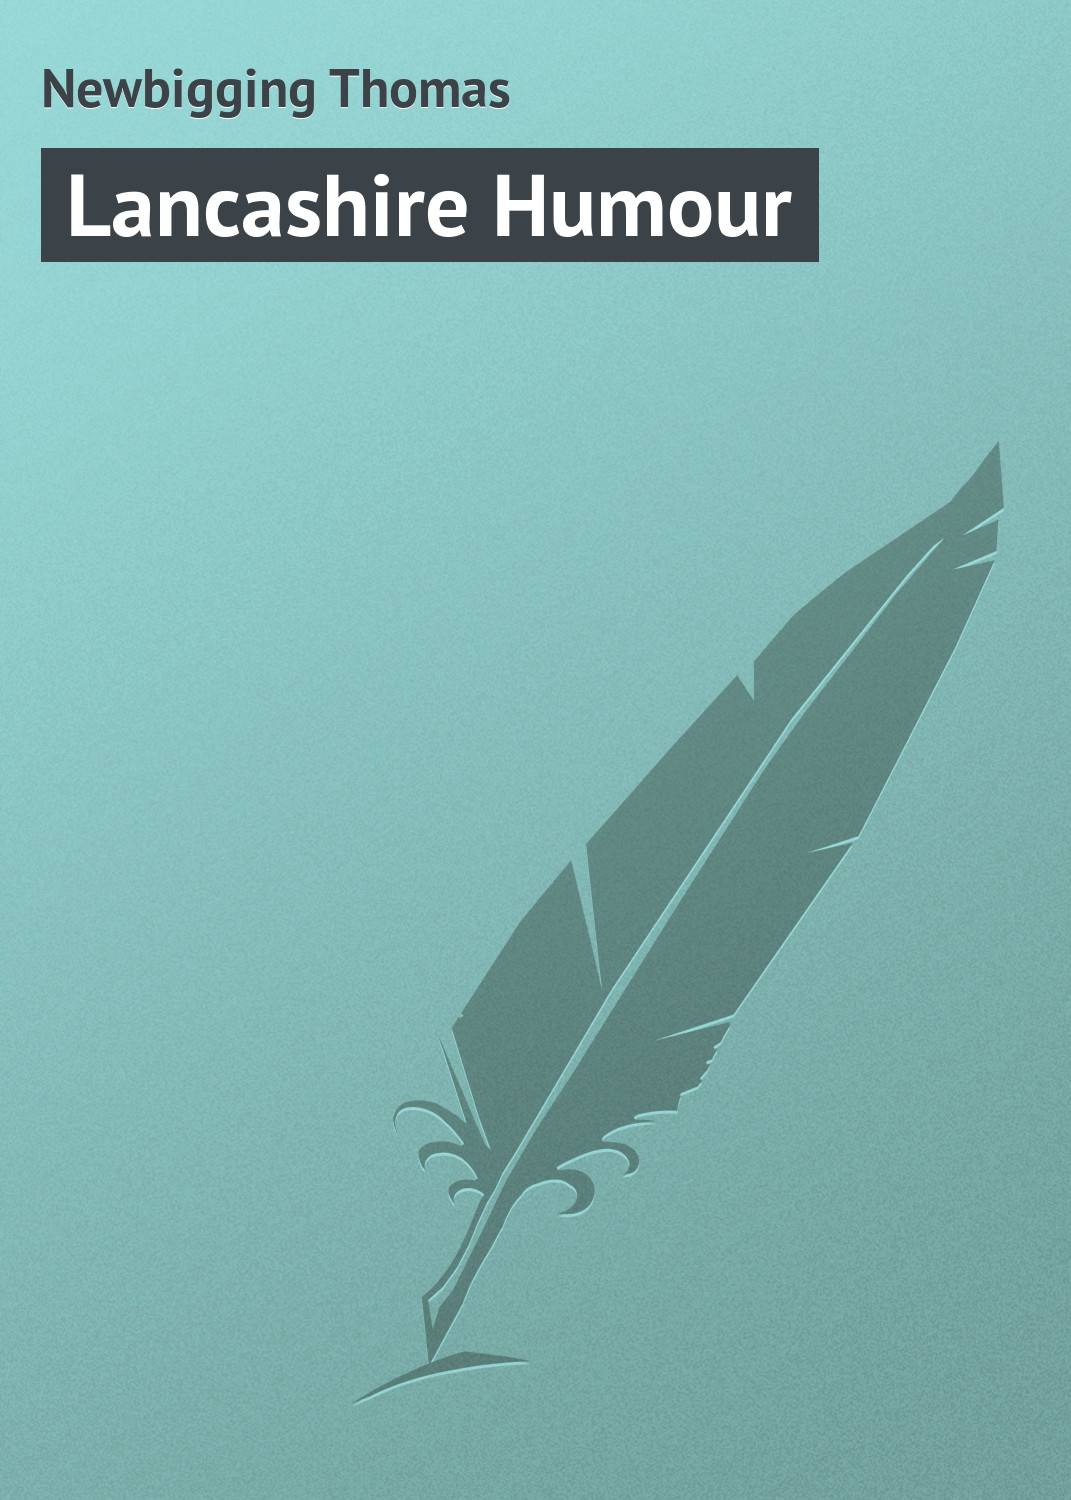 Книга Lancashire Humour из серии , созданная Thomas Newbigging, может относится к жанру Зарубежная классика, Зарубежный юмор. Стоимость электронной книги Lancashire Humour с идентификатором 23160483 составляет 5.99 руб.